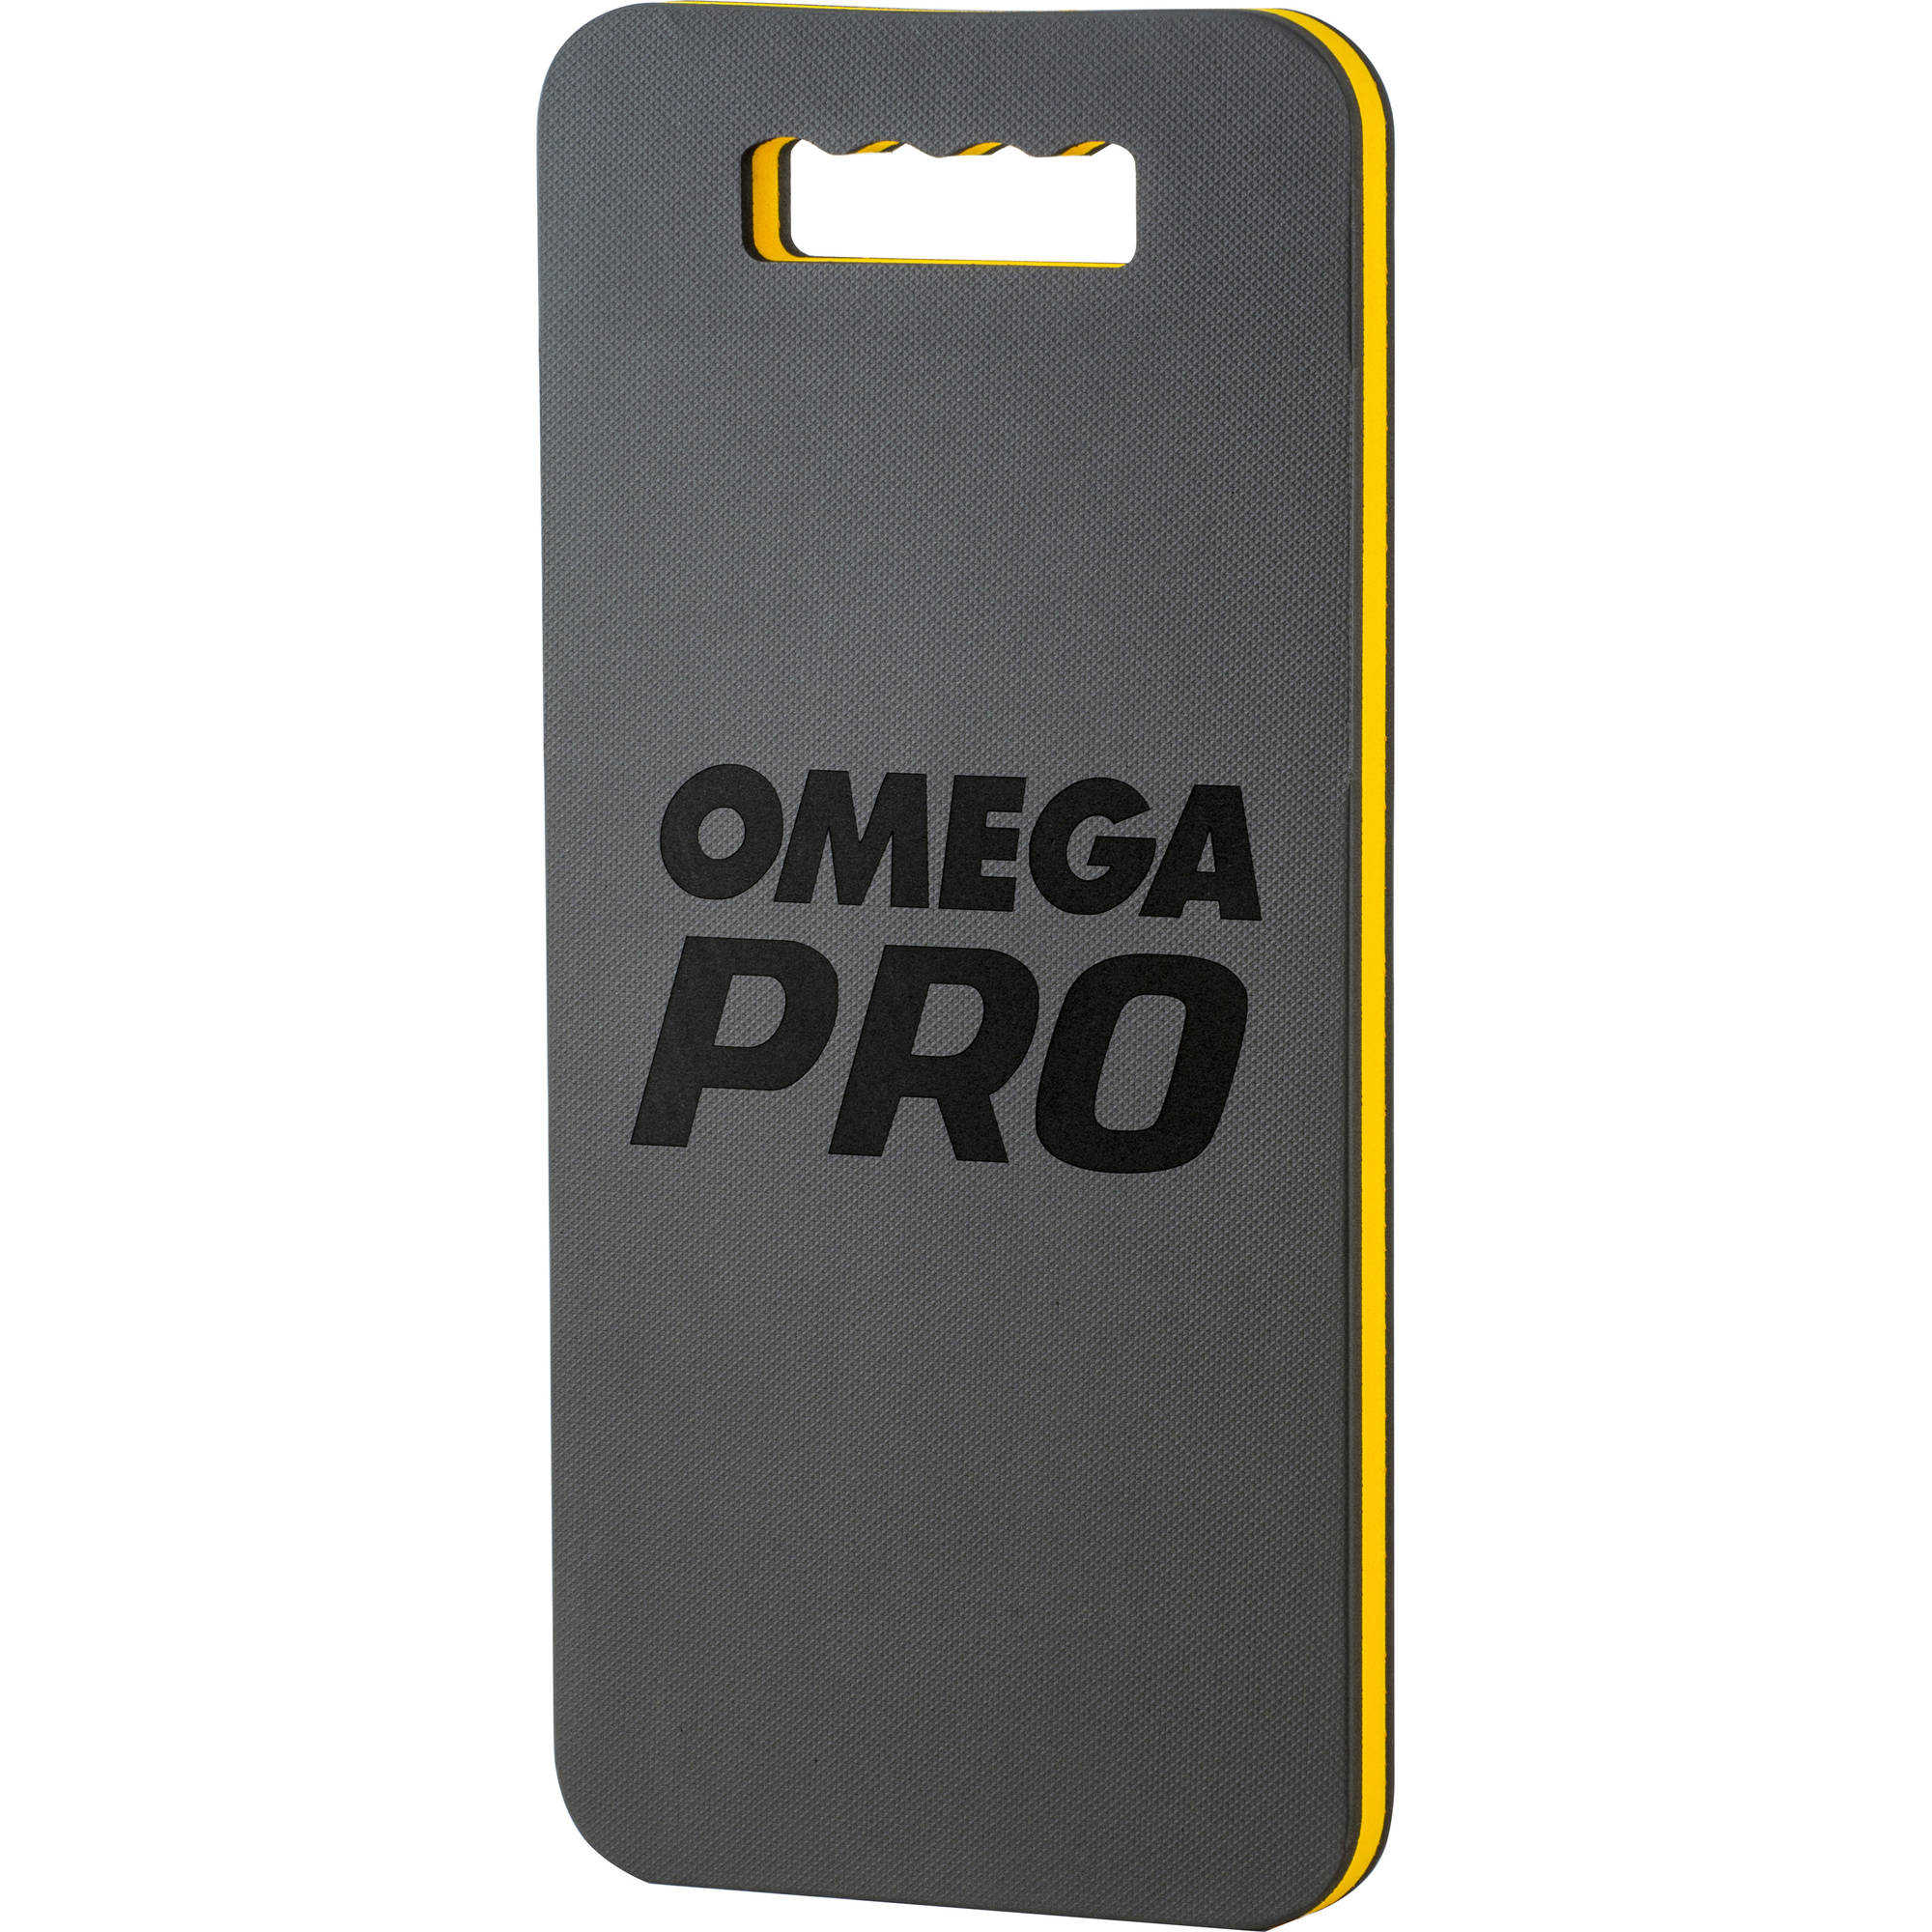 Omega Pro 85002 Knee Pad